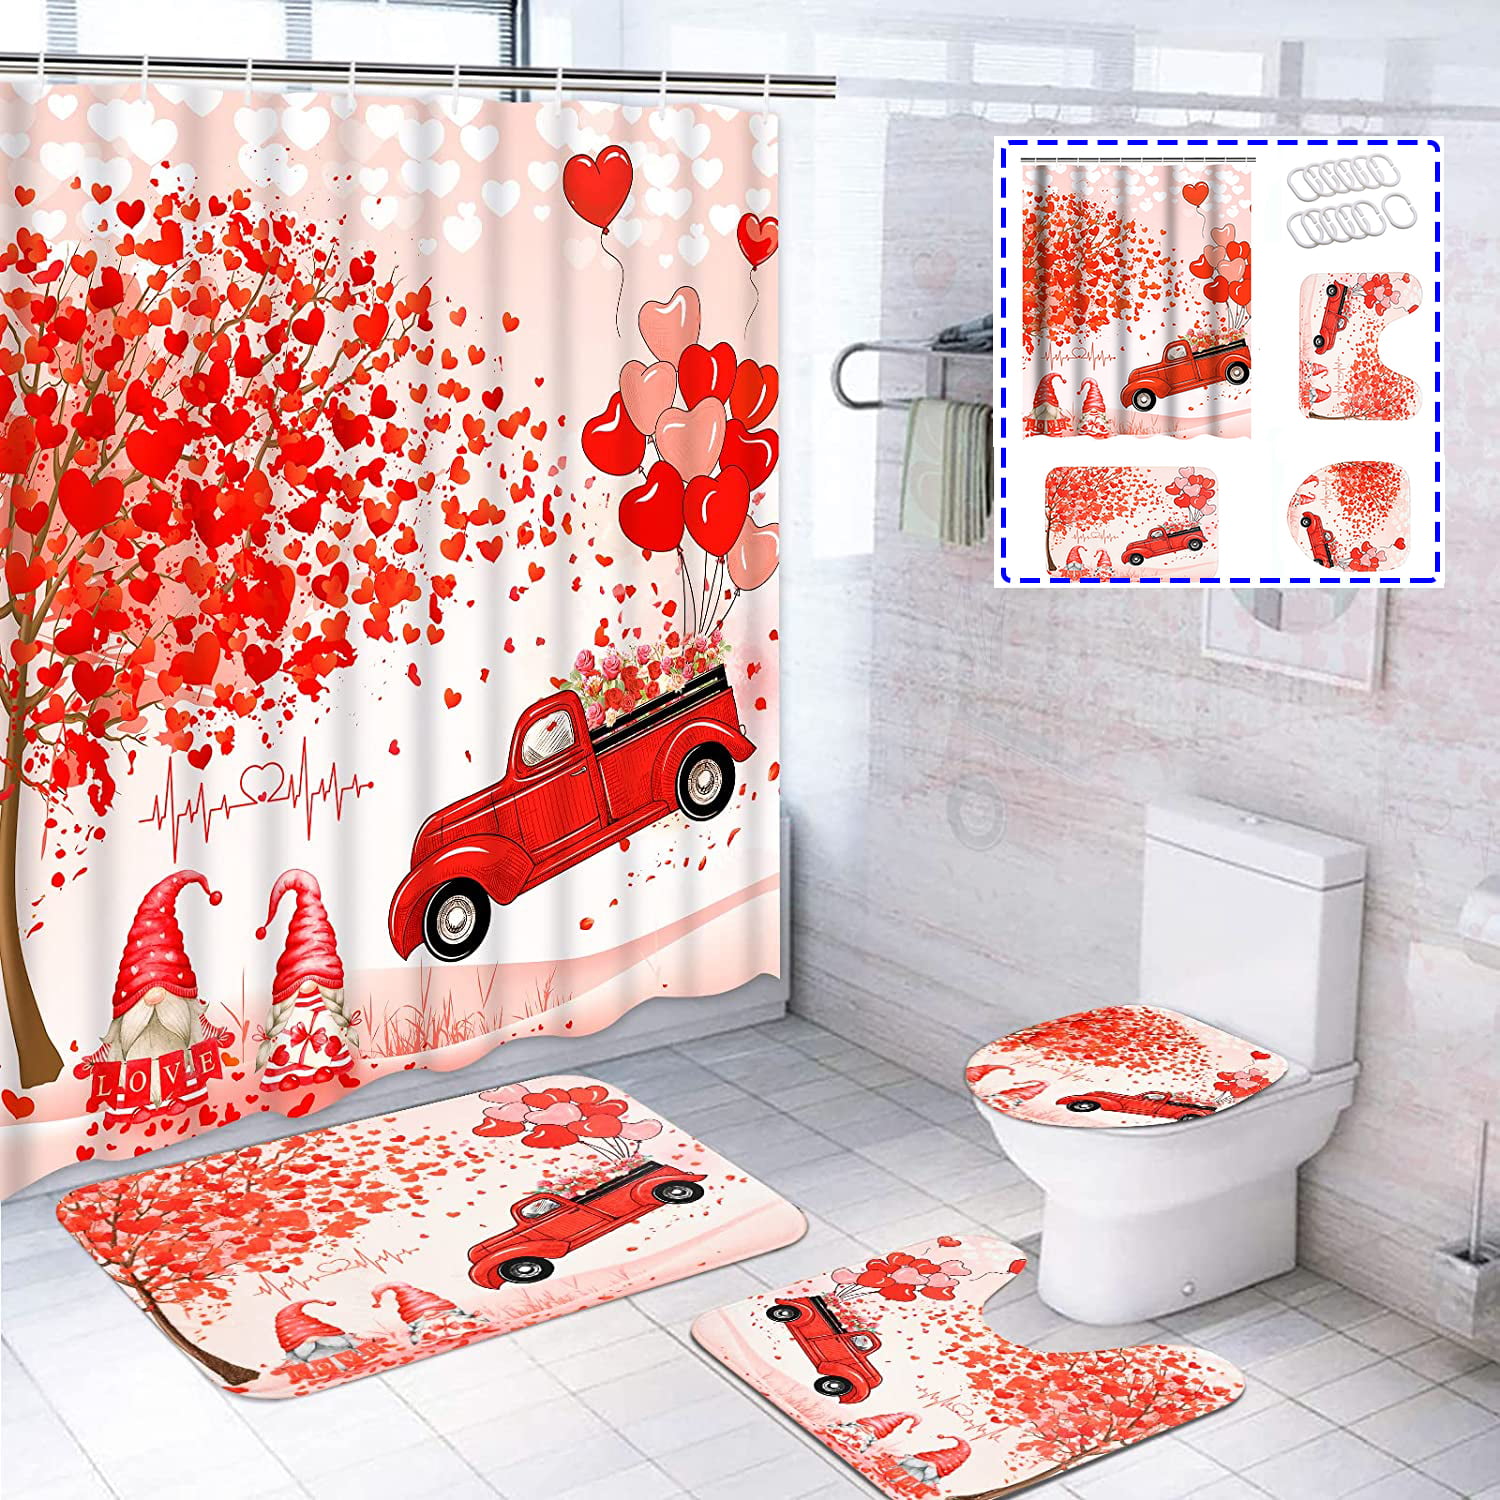 Details about   Sword Art Online 4PCS Bathroom Set Shower Curtain Bath Mat Toilet Lid Cover 